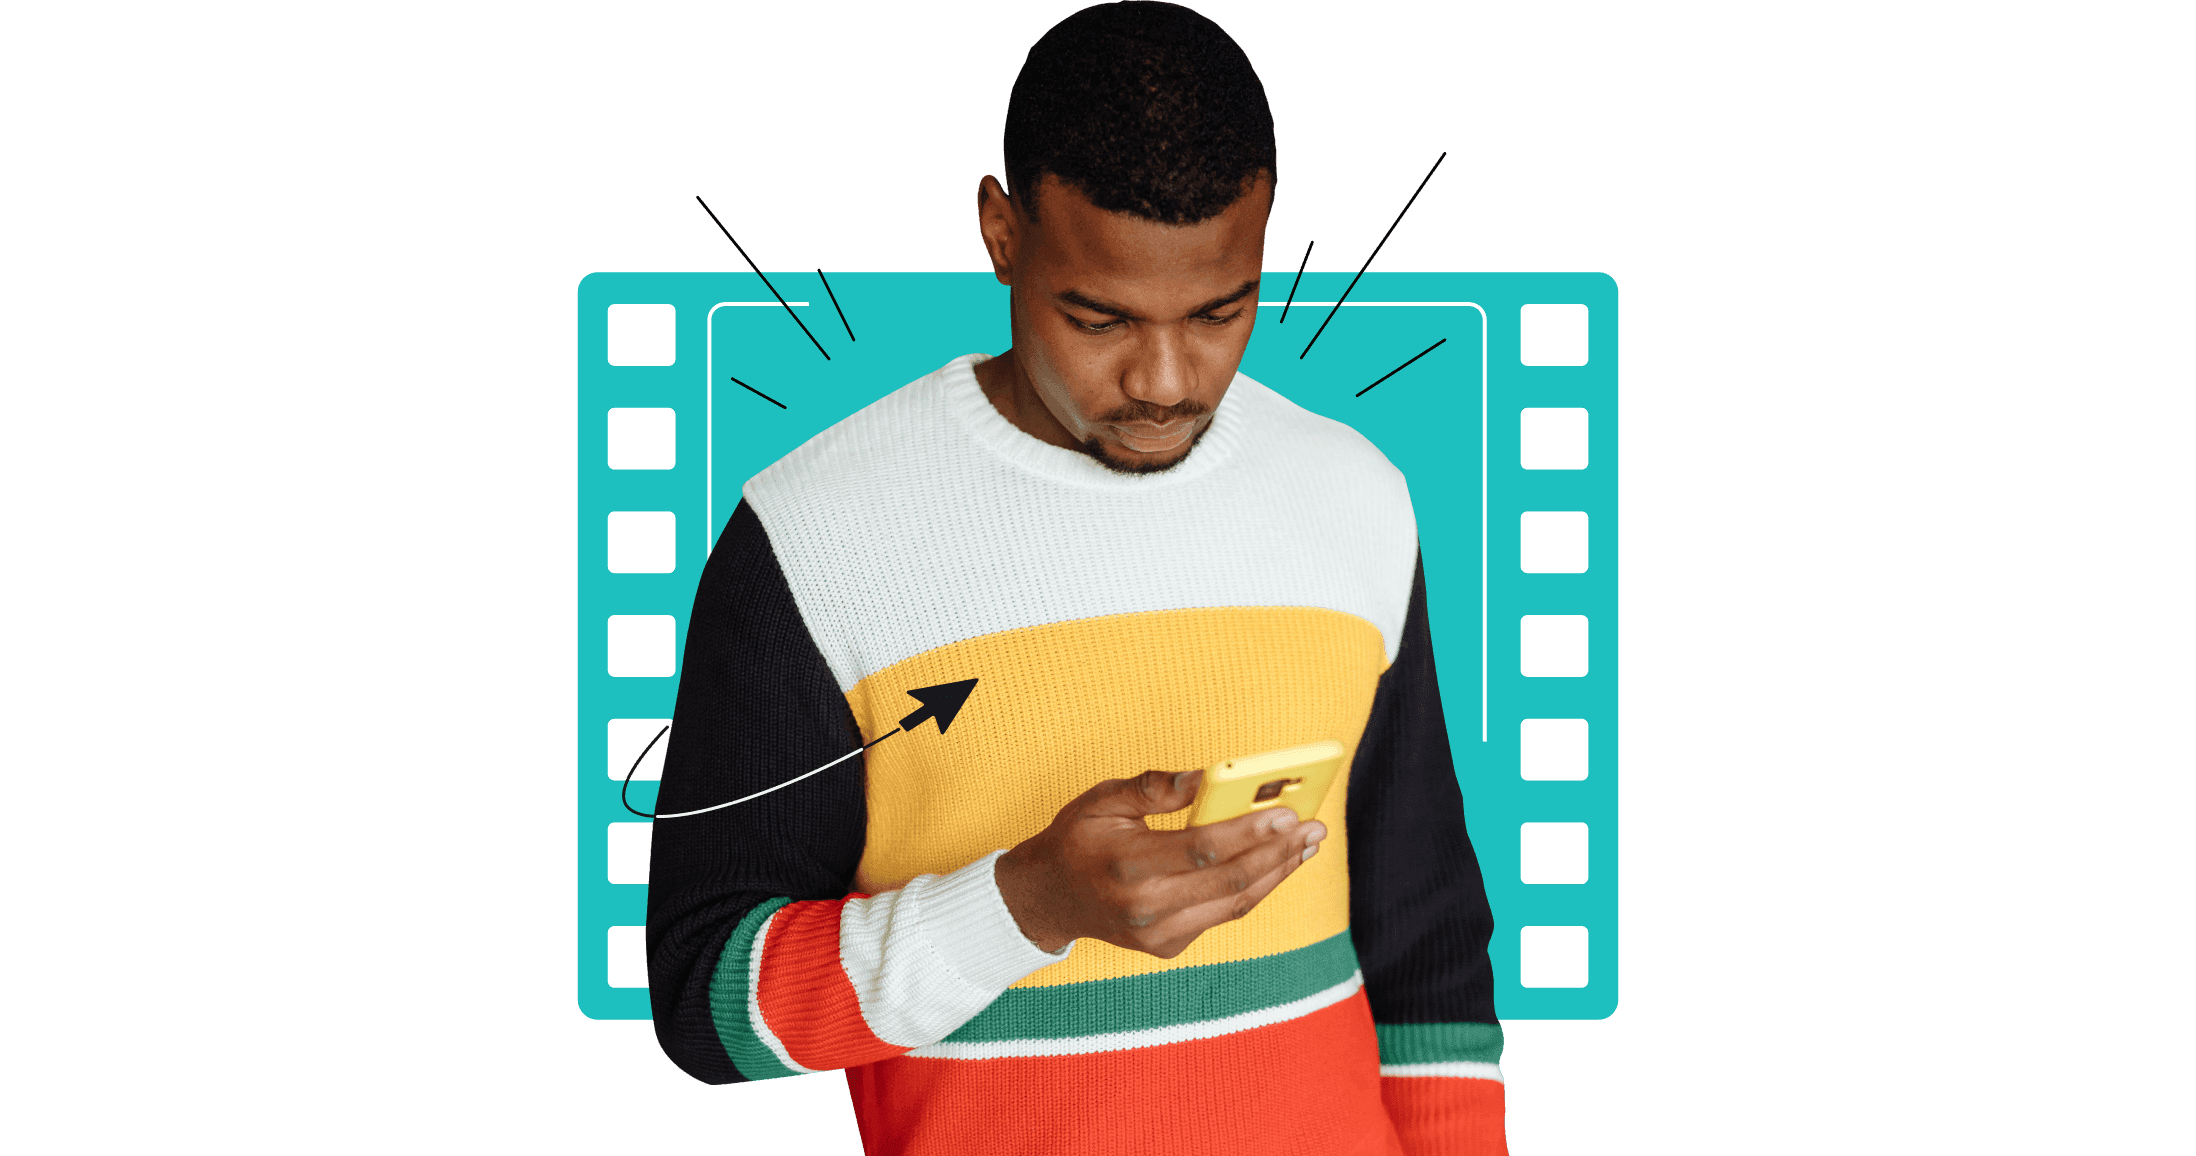 カラフルな縞模様のセーターを着ている男性が、黄色のスマートフォンを見ている。